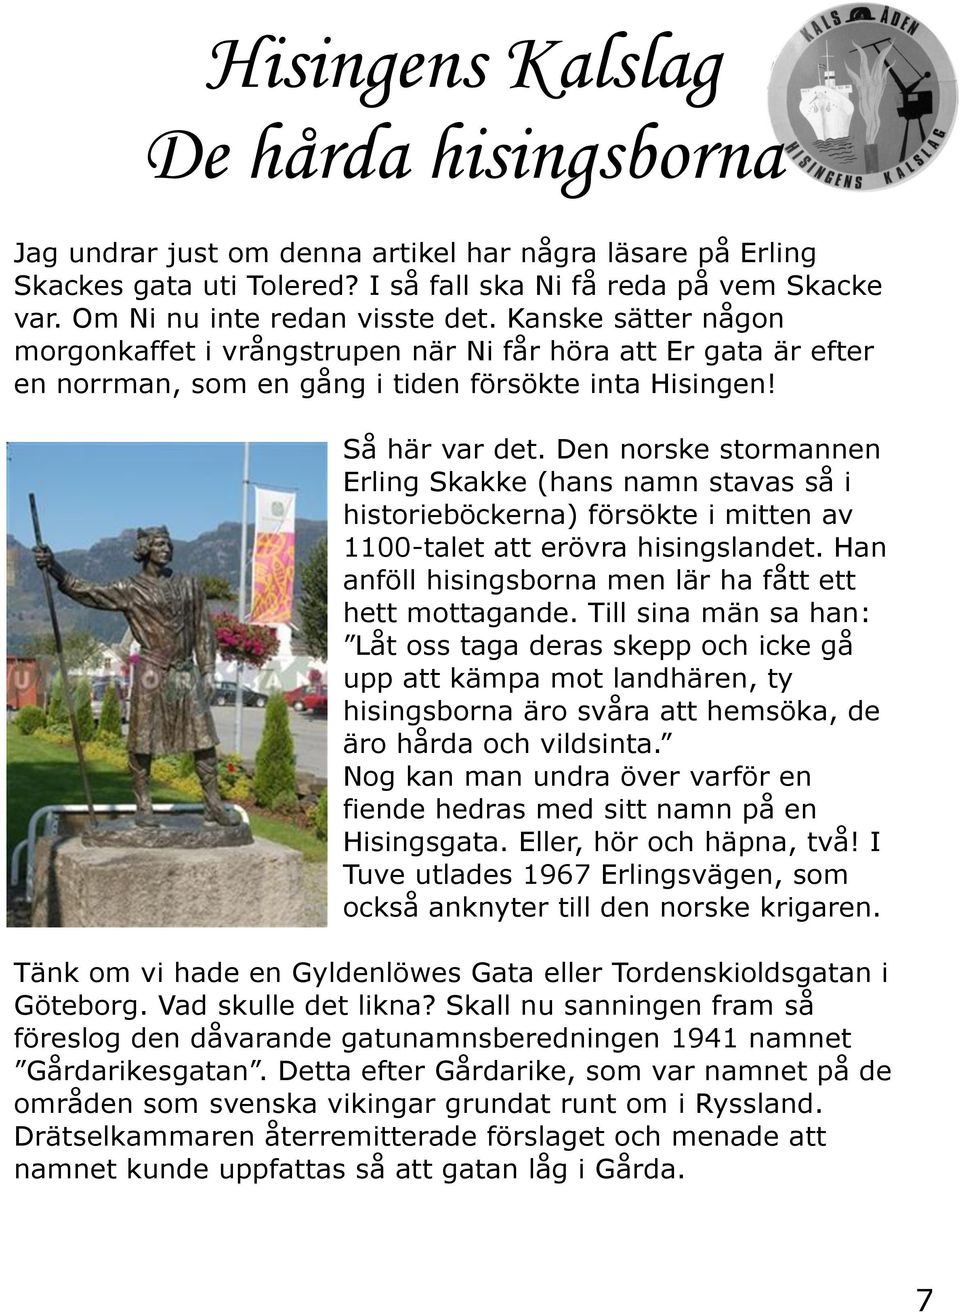 Den norske stormannen Erling Skakke (hans namn stavas så i historieböckerna) försökte i mitten av 1100-talet att erövra hisingslandet. Han anföll hisingsborna men lär ha fått ett hett mottagande.